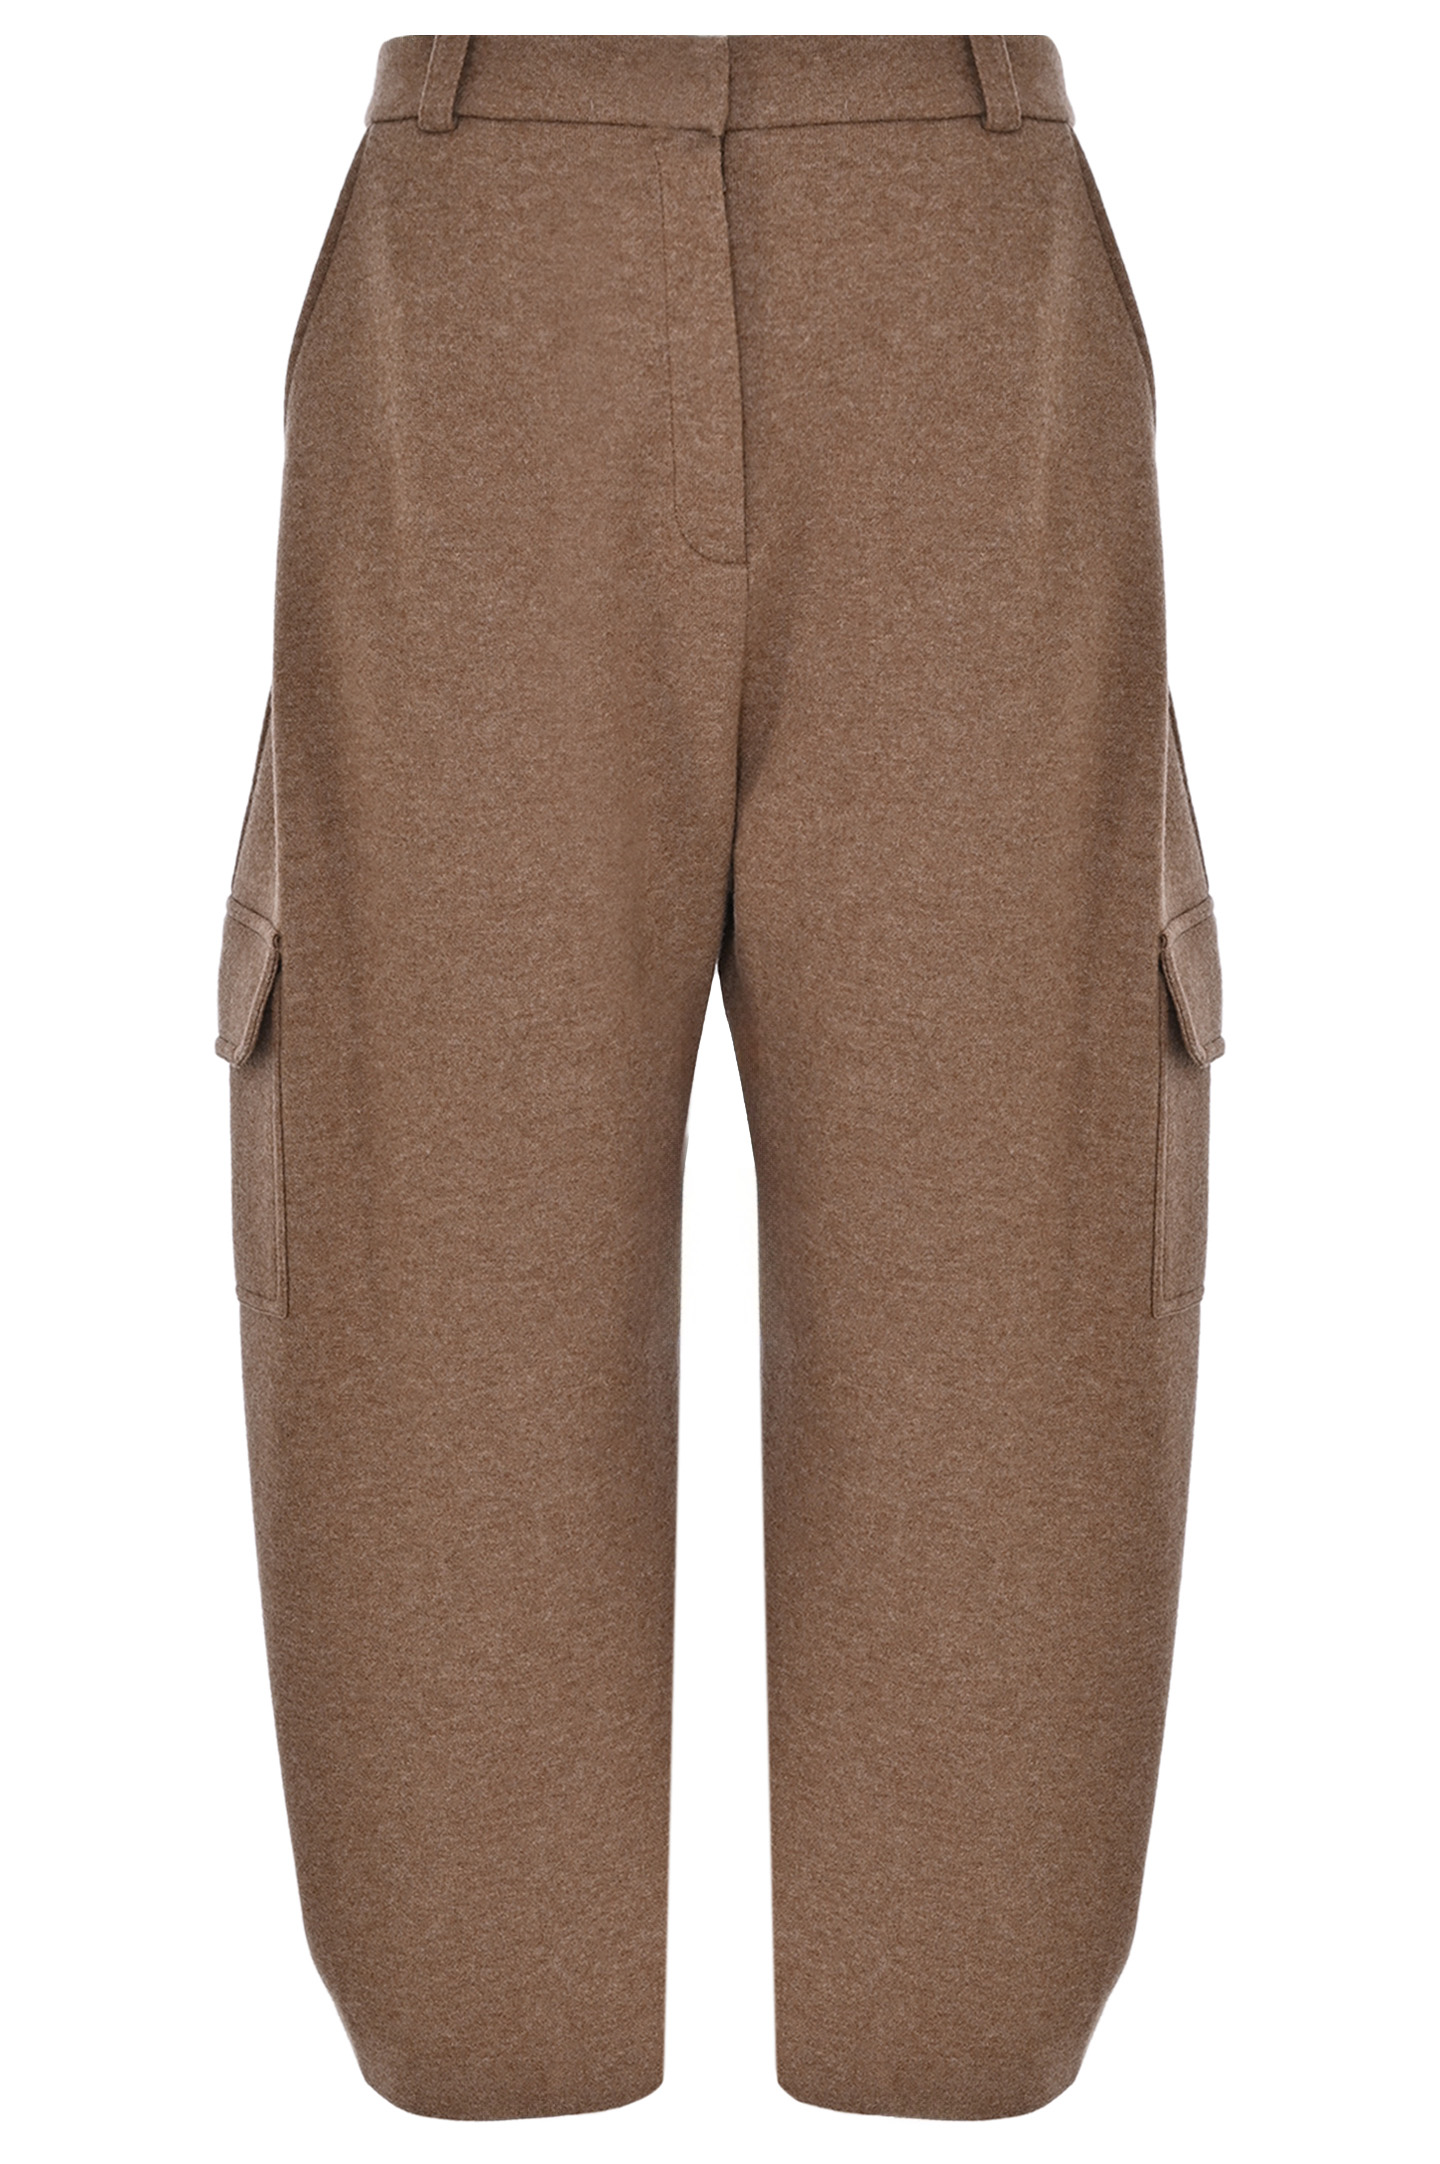 Брюки широкие из кашемира с карманами LORO PIANA FAO0915, цвет: Коричневый, Женский